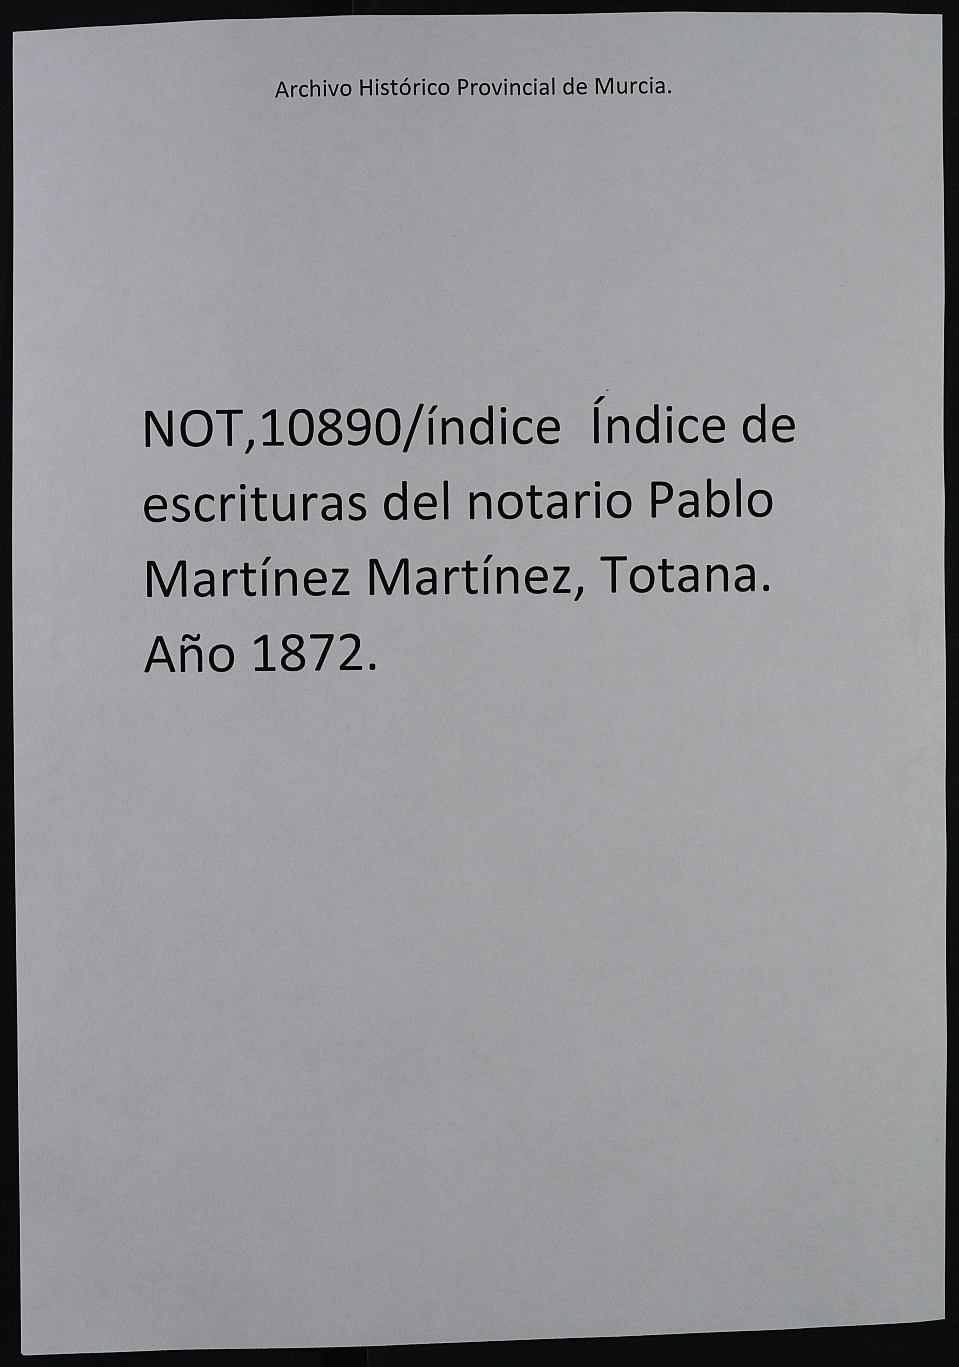 Registro de Wenceslao Miralles García, Totana, de 1872.